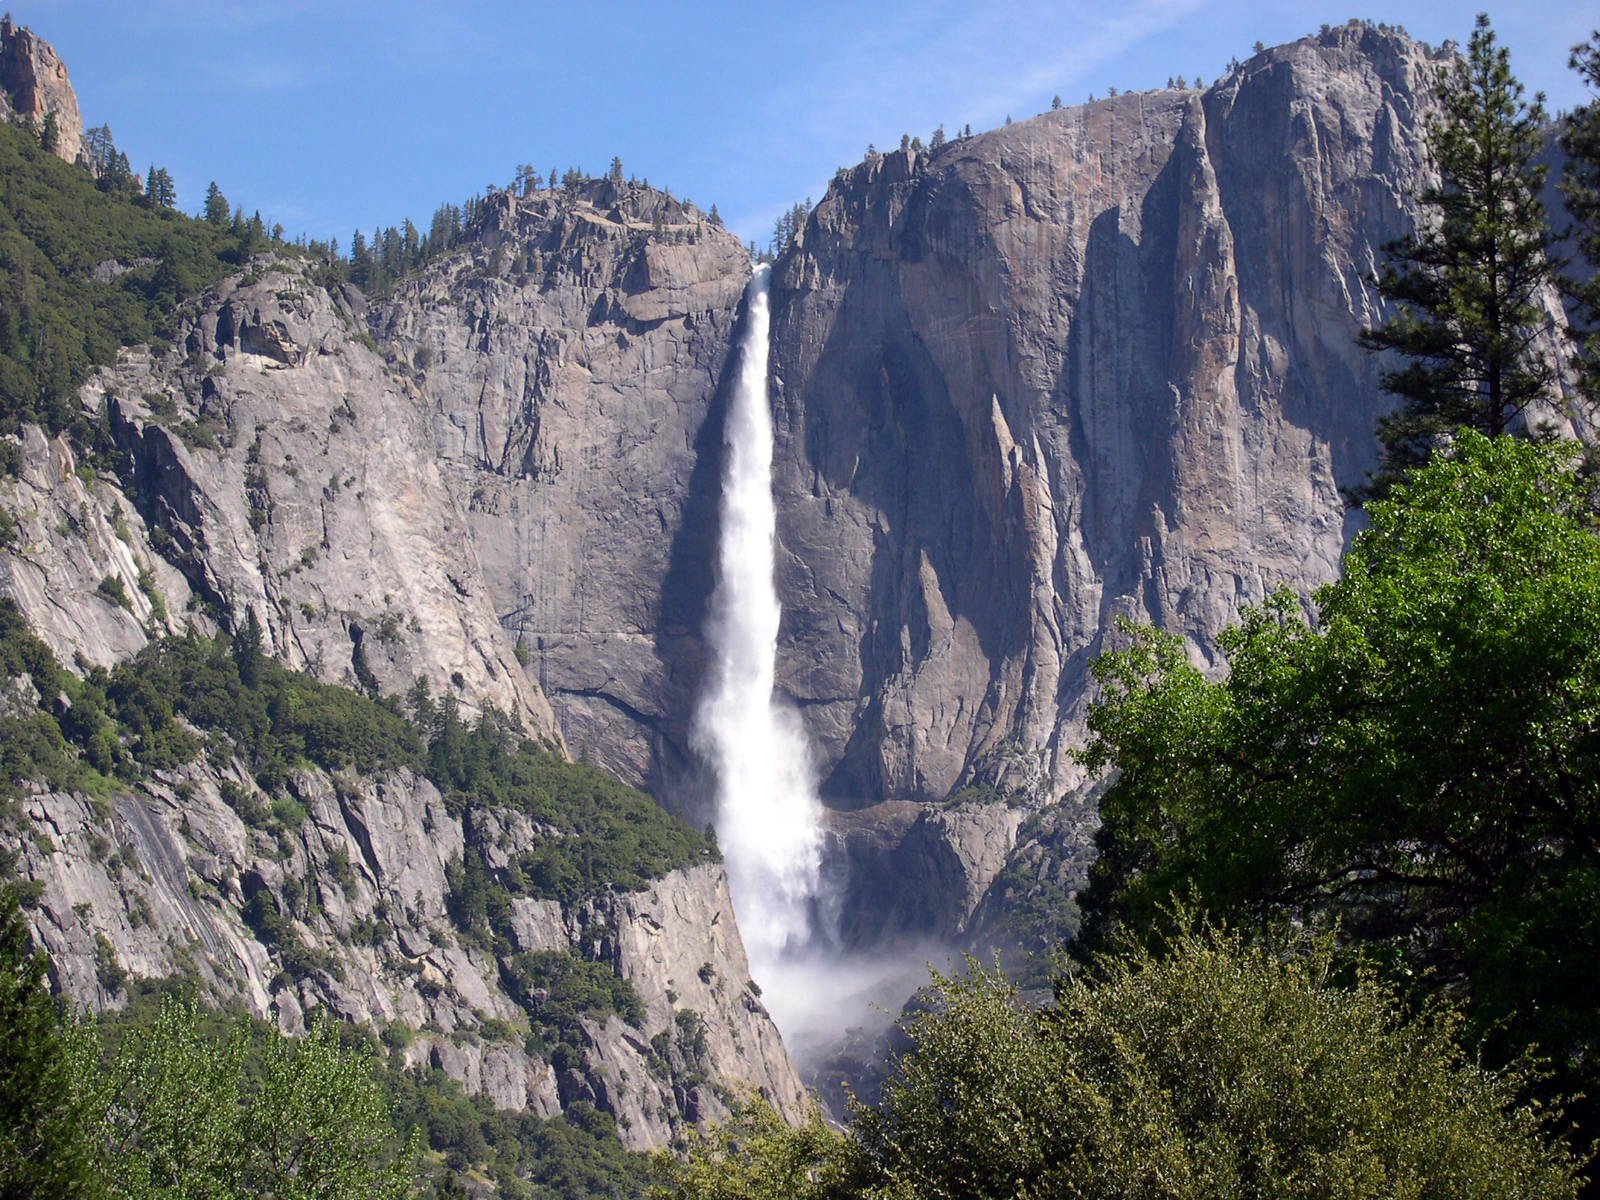 File:Yosemite National Park Mountains Waterfall.jpg - Wikimedia Commons